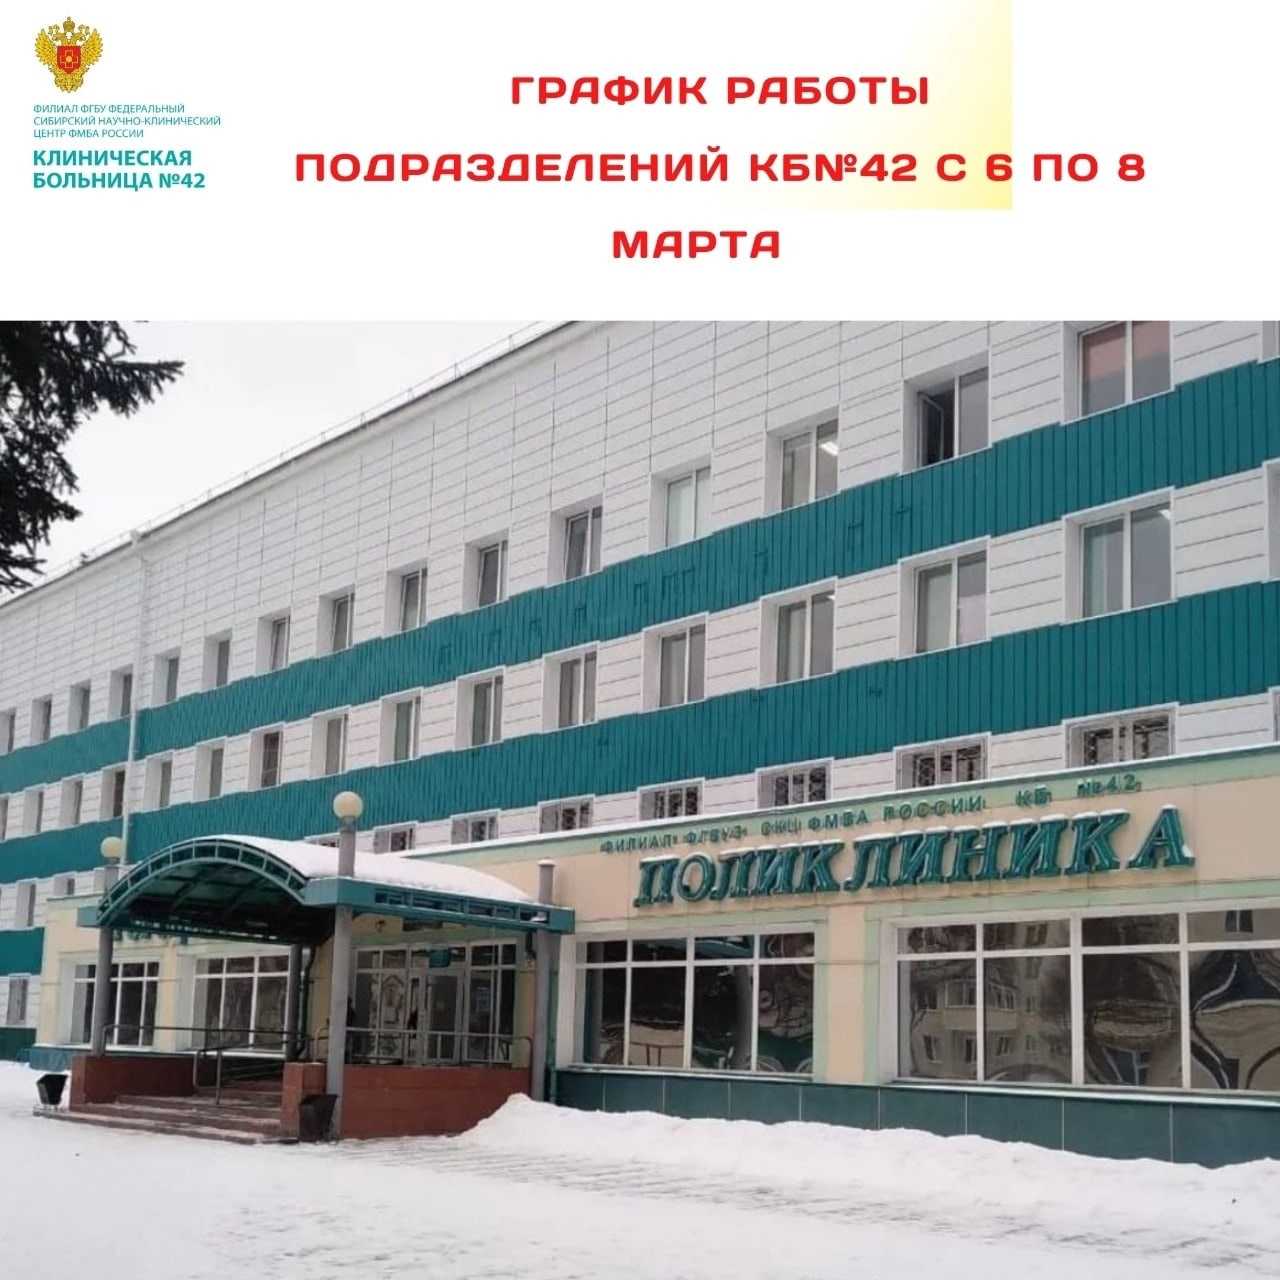 Городская поликлиника зеленогорск красноярский край запись